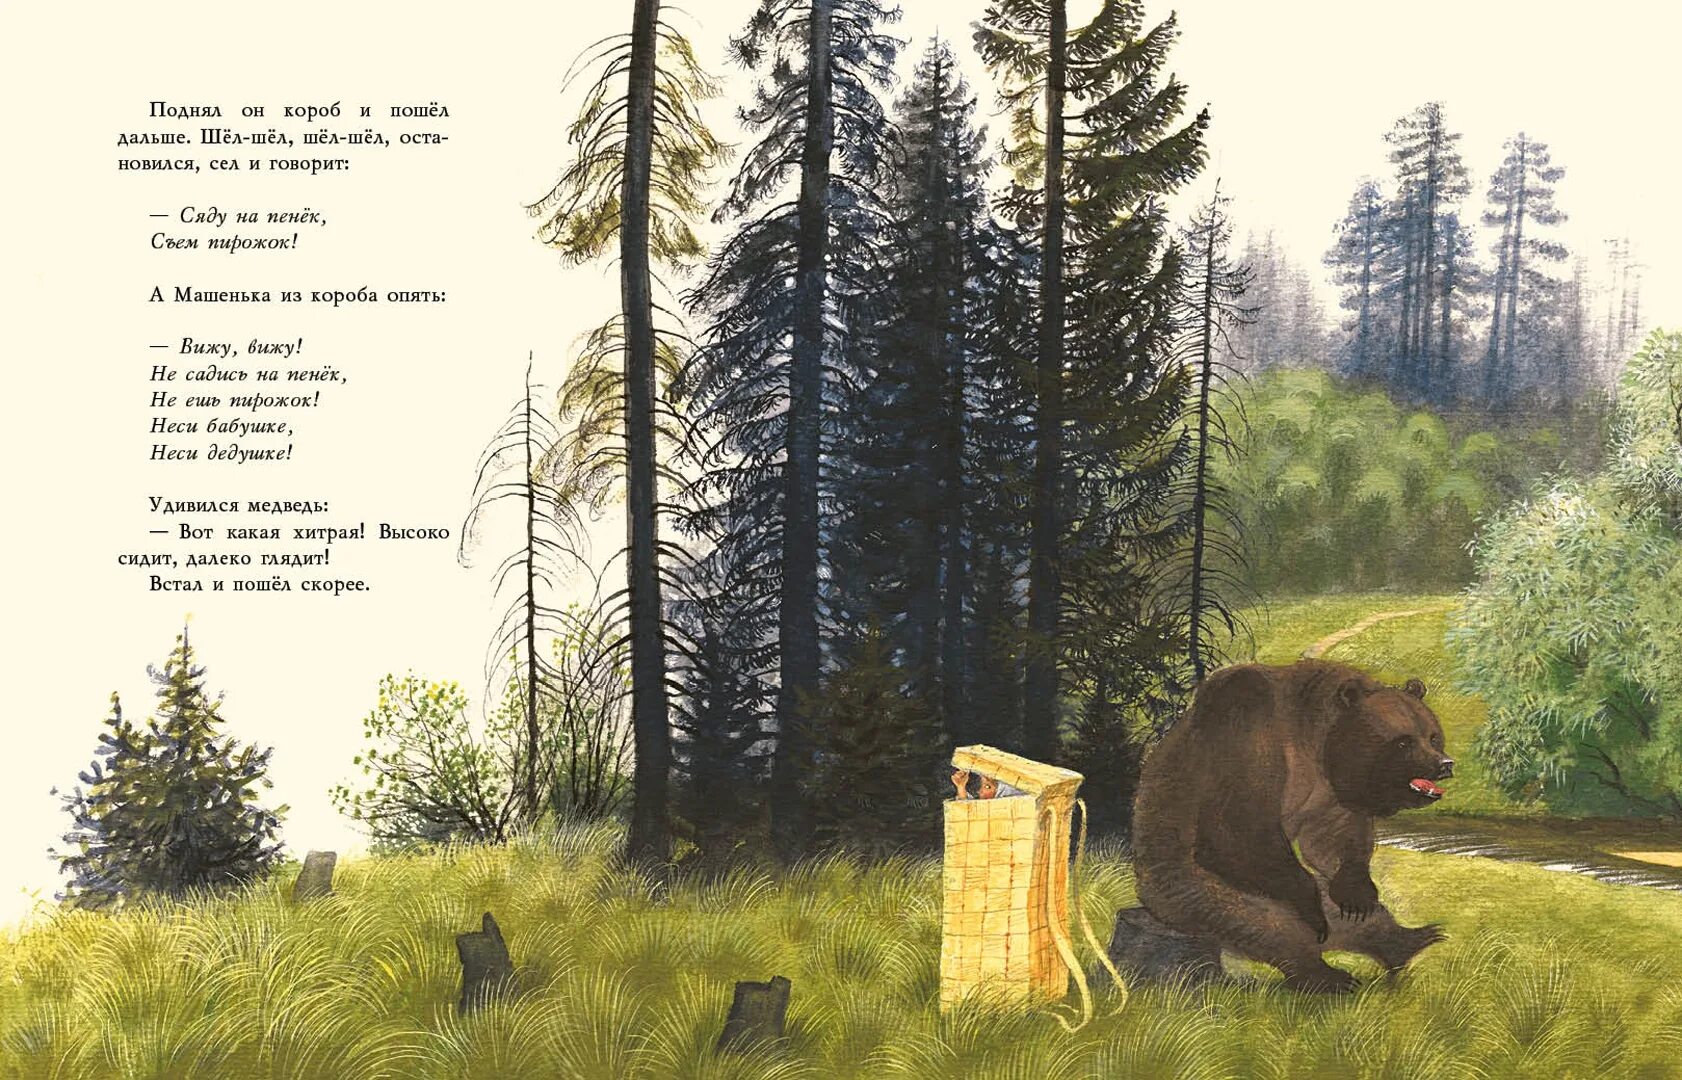 Маша и медведь Устинов. Иллюстрации к сказке Маша и медведь Васнецова. Иллюстрации к сказке Маша и медведь Устинова. Подъезжая к лесу увидел он